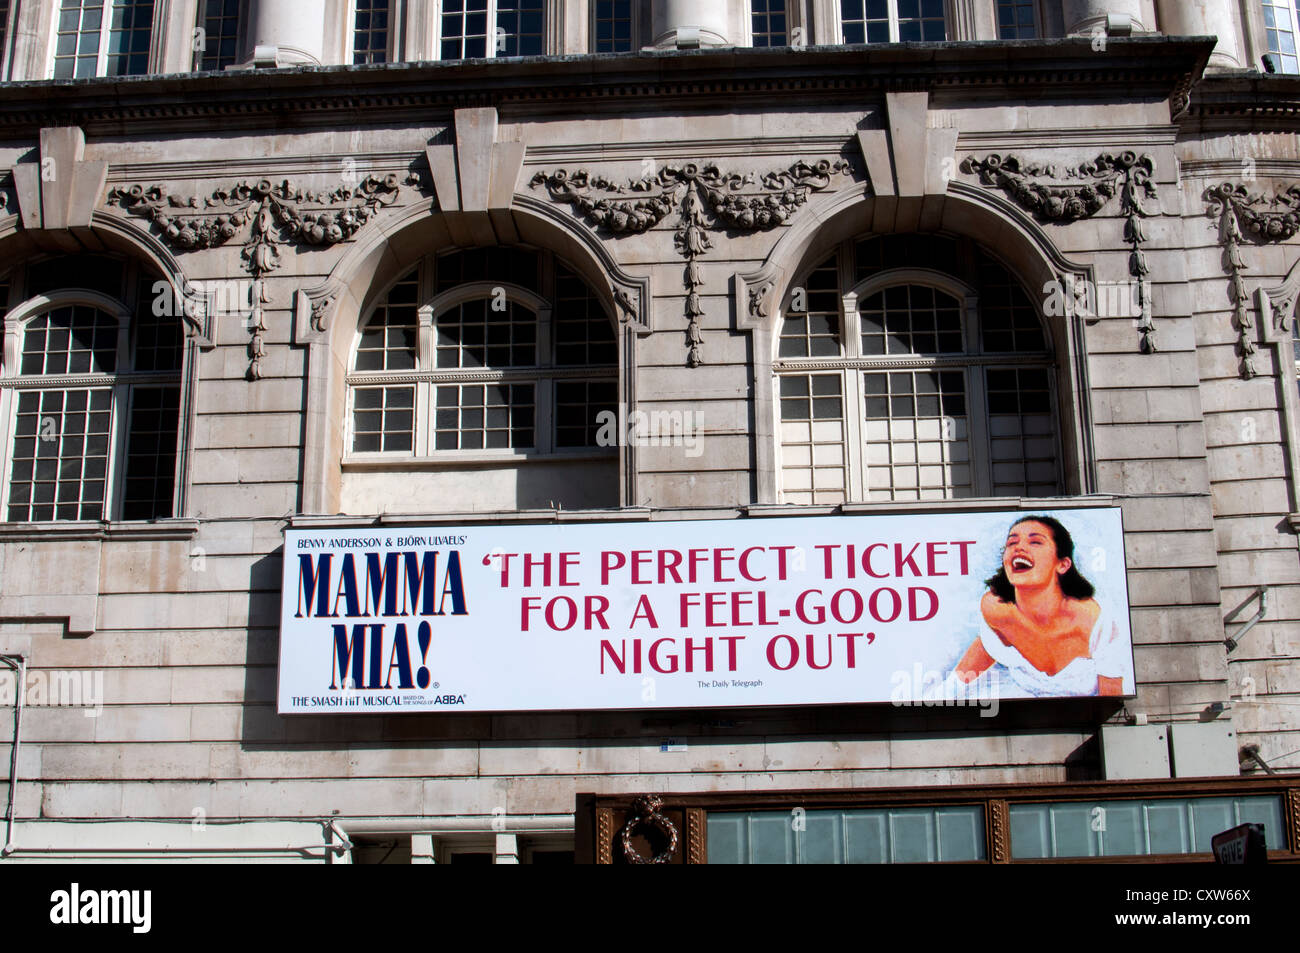 Mamma Mia ! Signe, Noel Coward Theatre, Londres, UK Banque D'Images